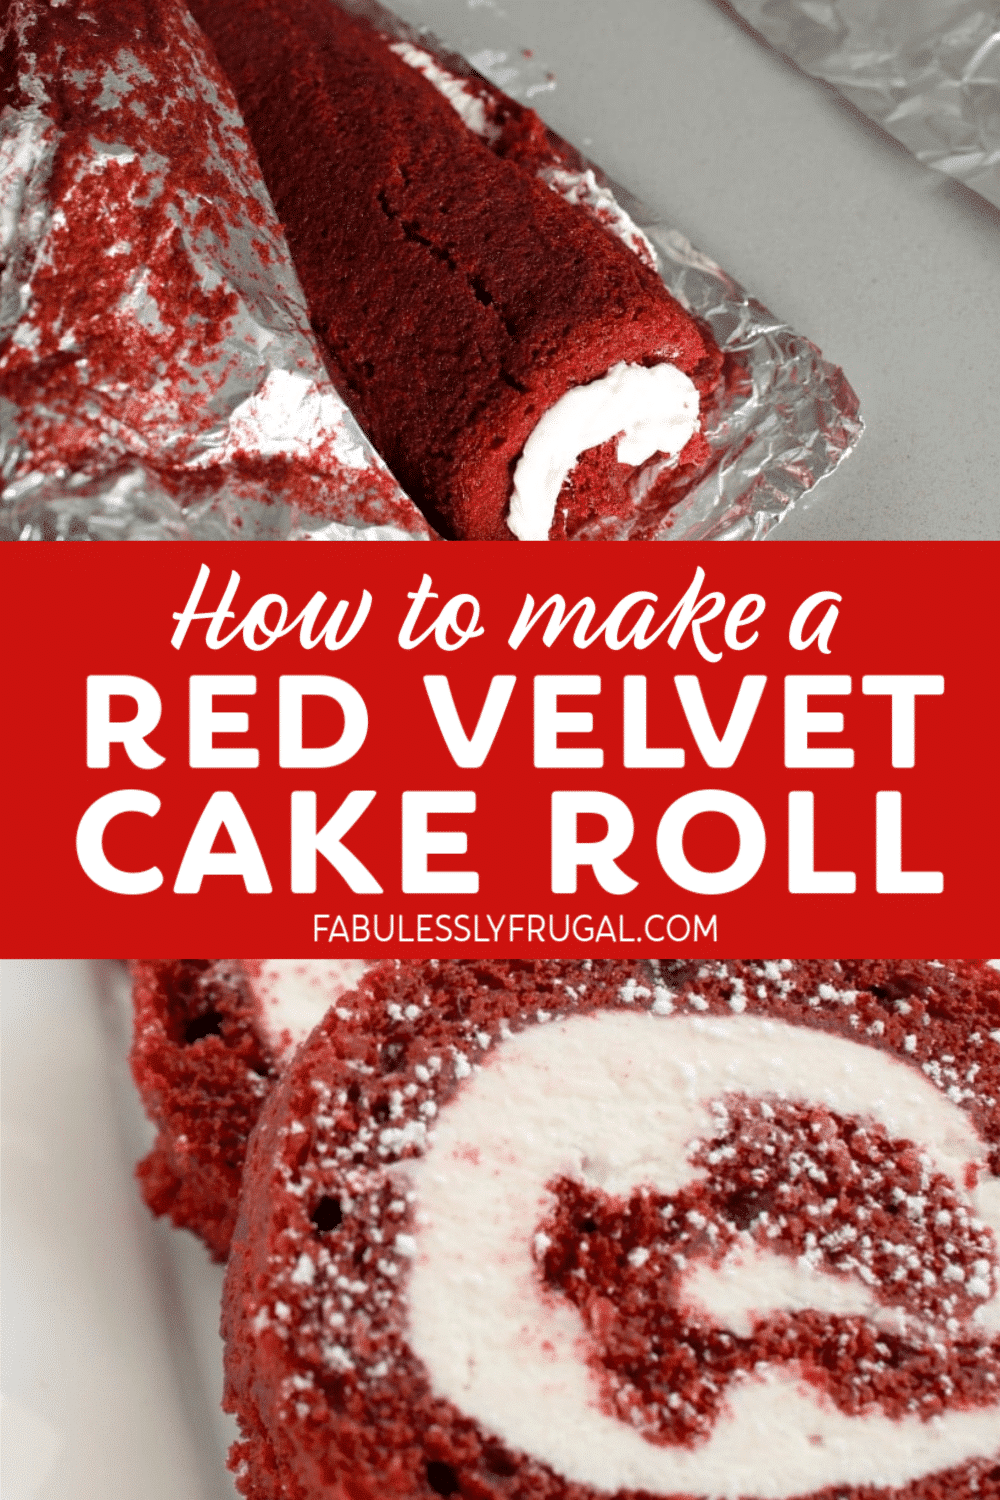 Red velvet cake roll recipe